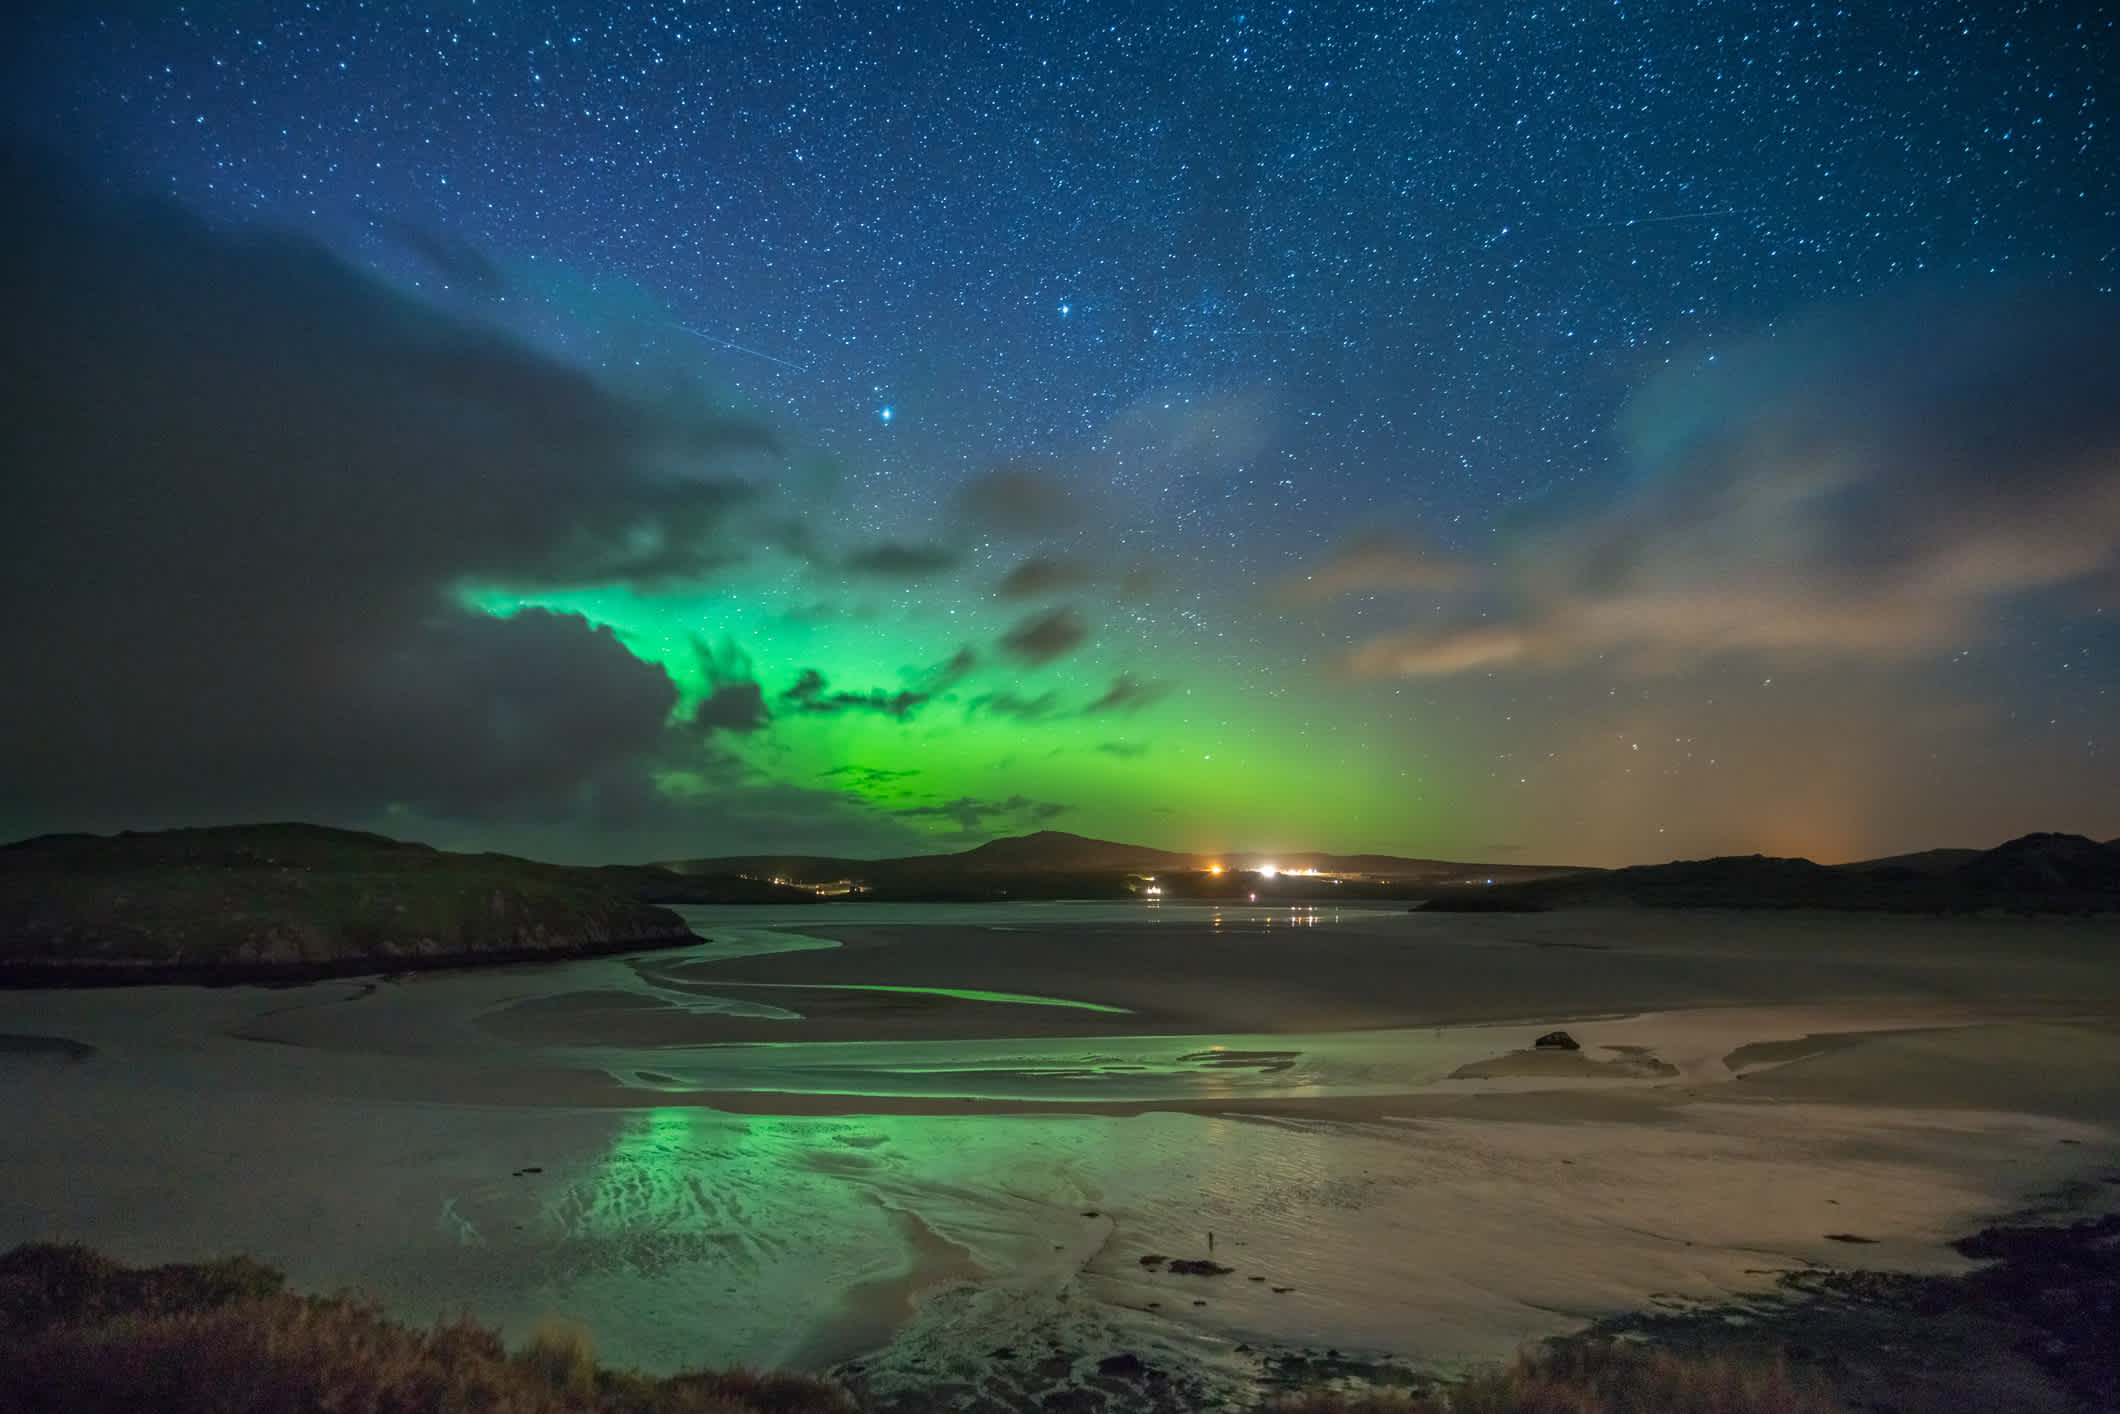 Magnifique aurore boréale en Écosse

